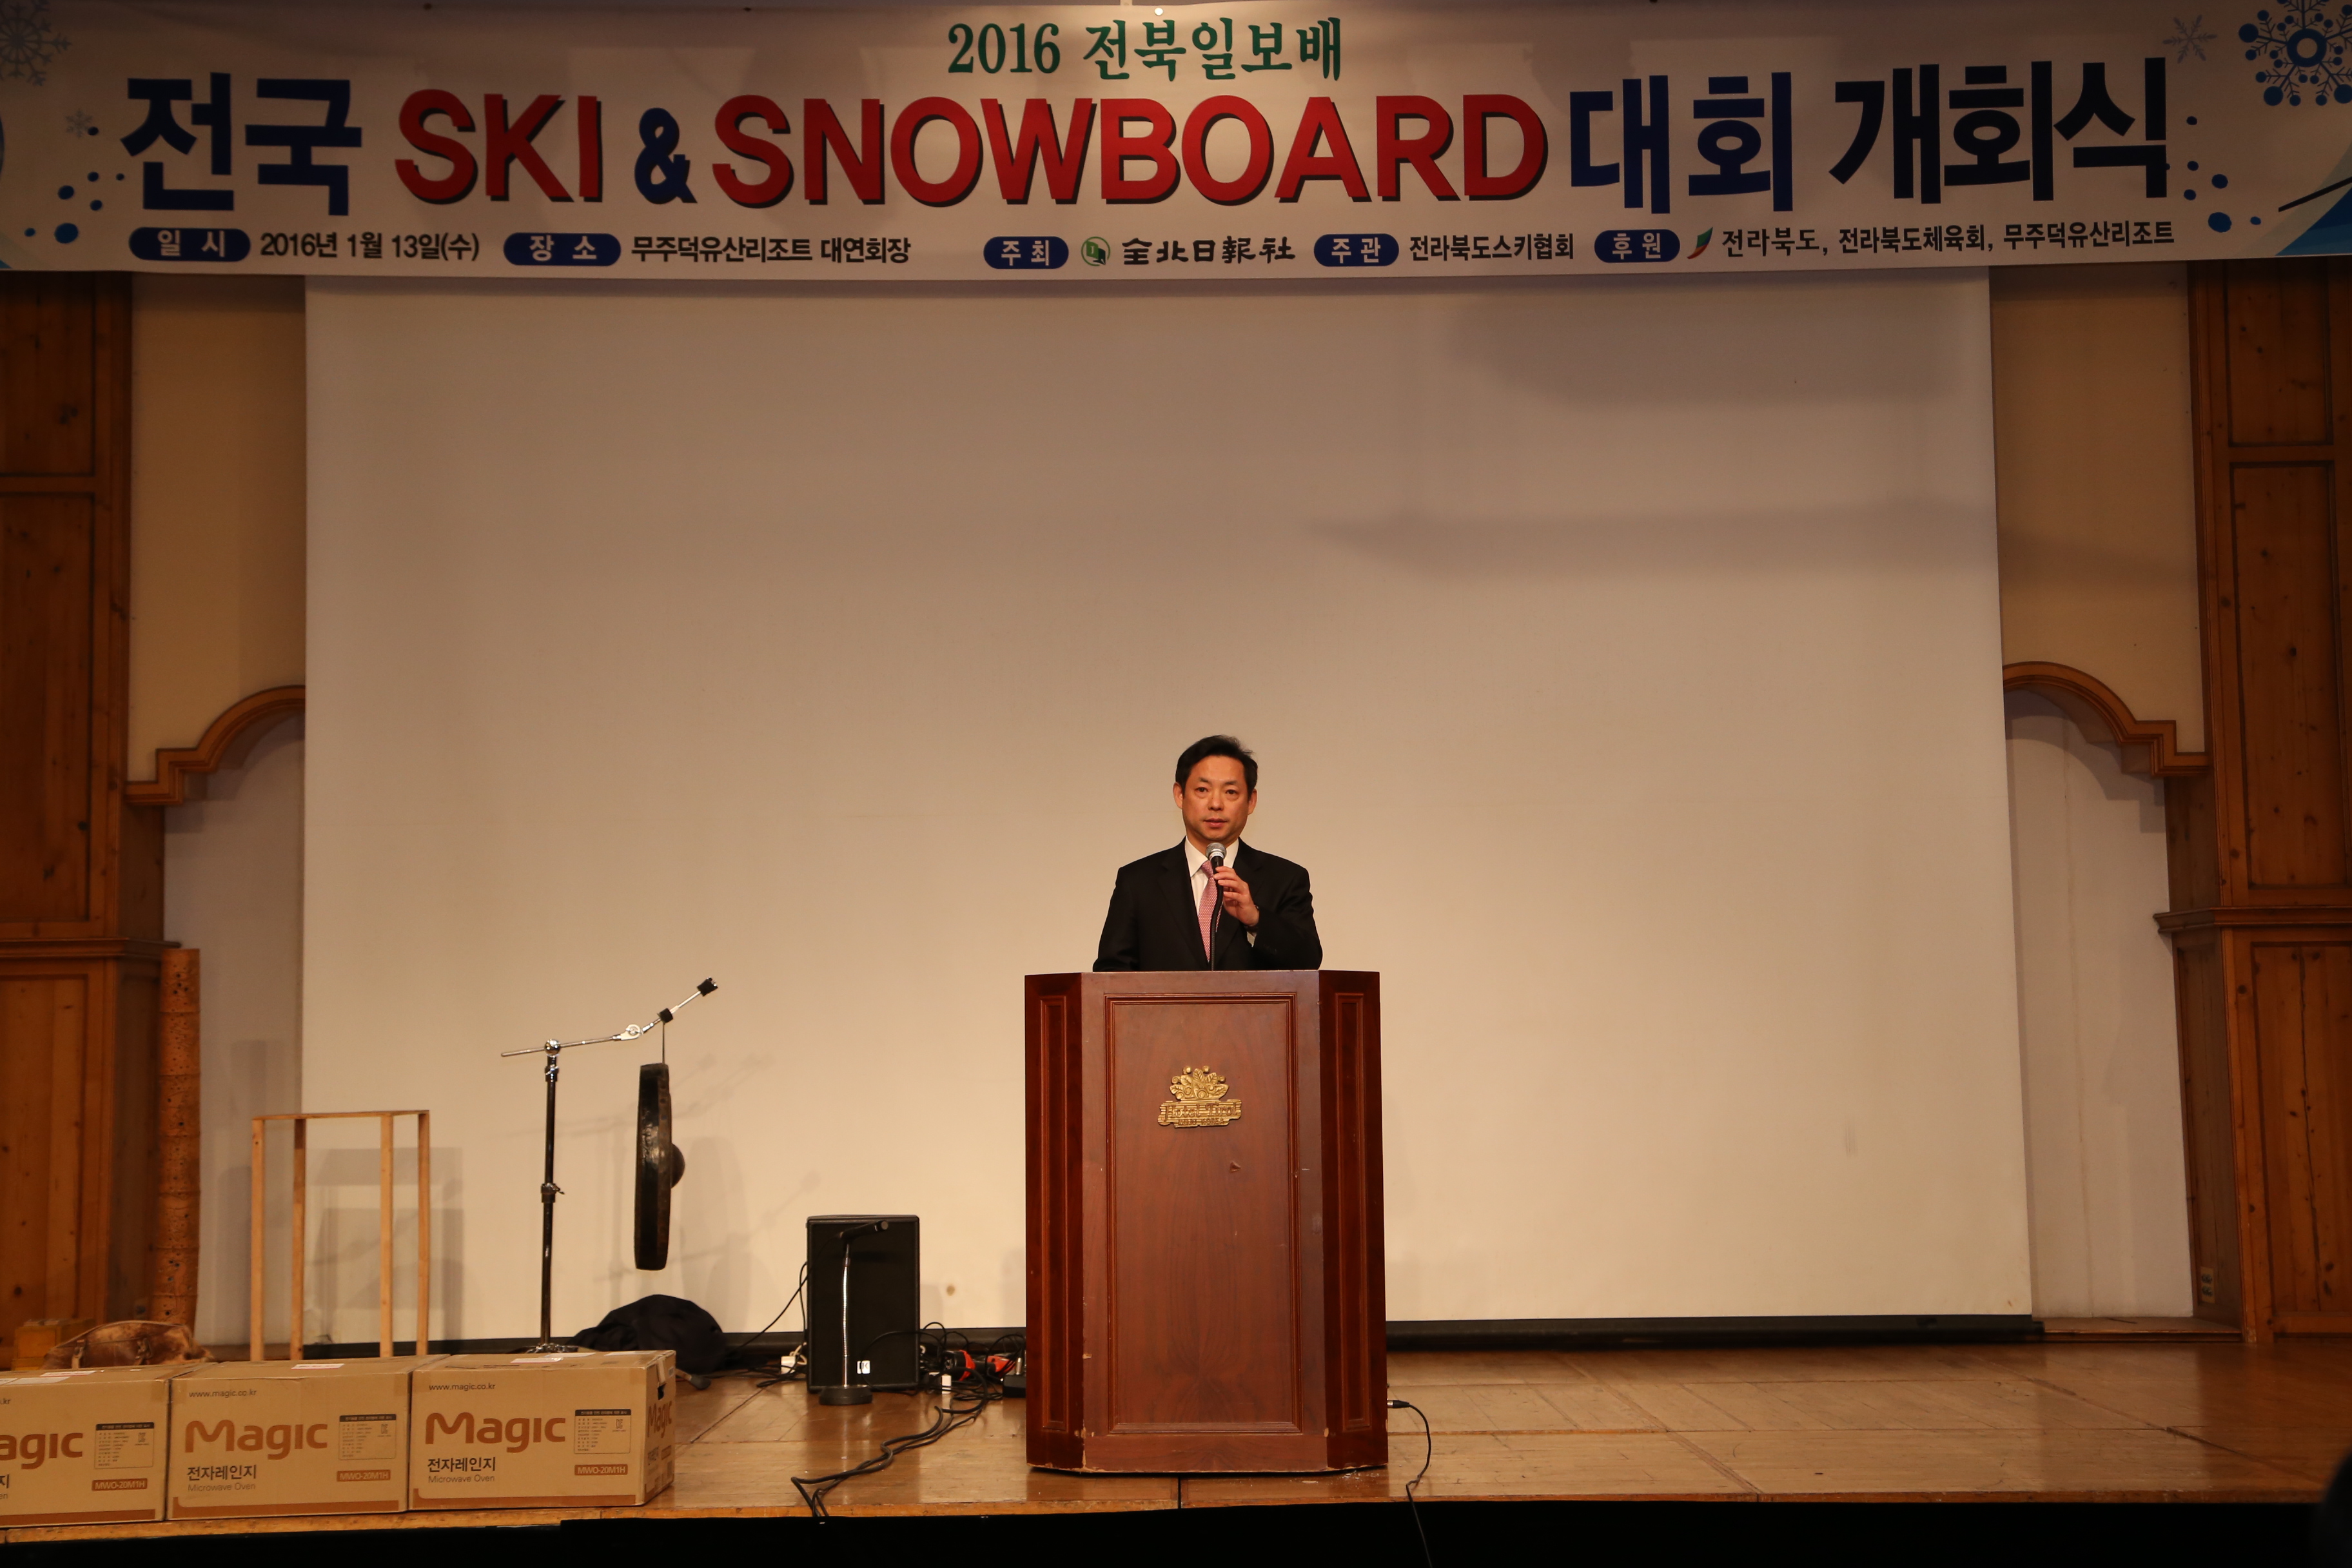 2016.01.13. 2016 전북일보배 전국 스키&스노우보드 대회